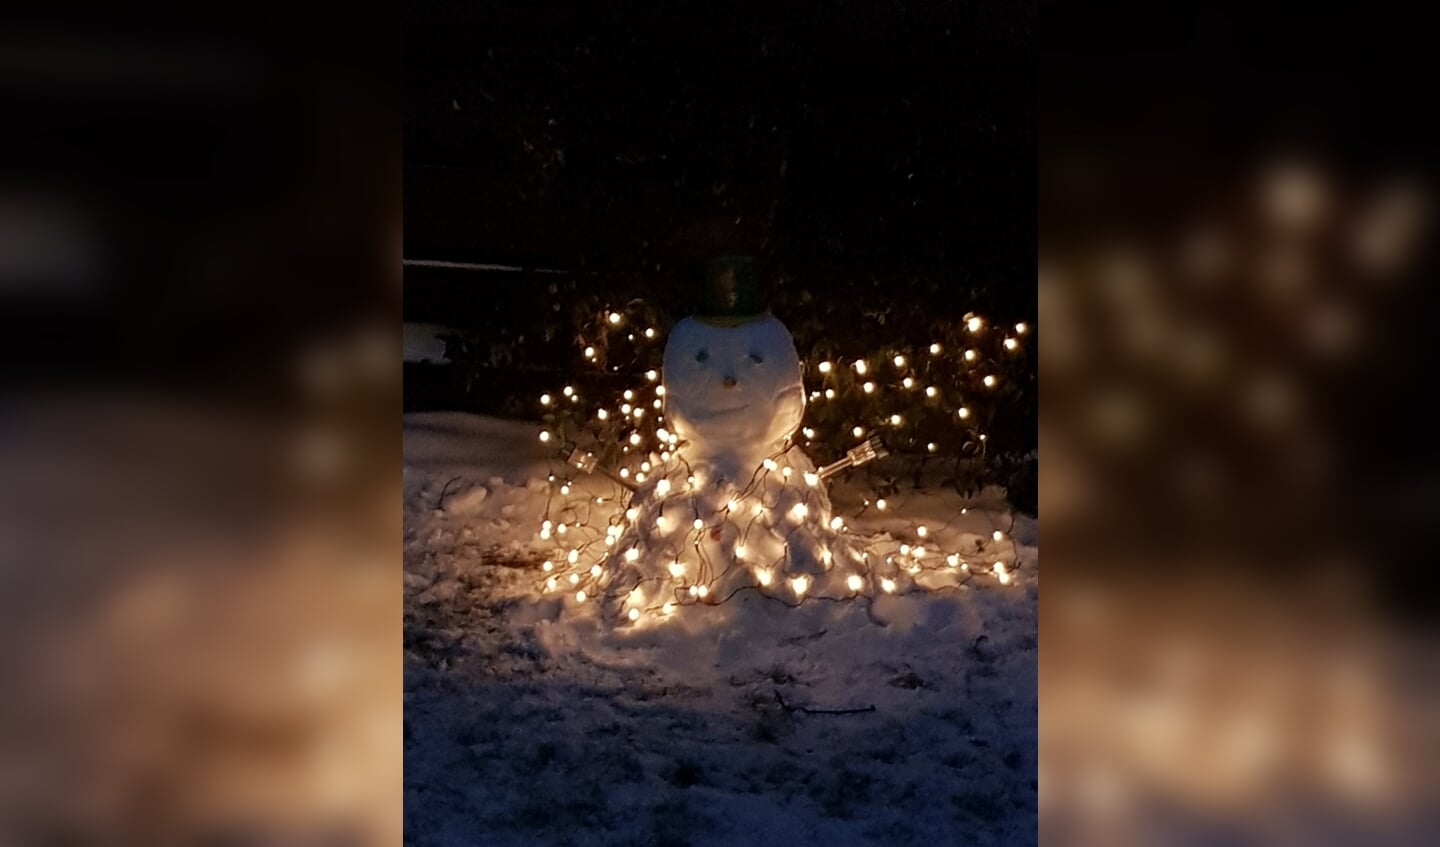 Jeroen van der Voort ging samen met zijn vrouw Hope en dochter Alexis aan de slag, en daar was sneeuwpop Olaf. "Deze sneeuwpop is een echte nachtbraker. Met zijn lichtgevende cape gaat hij normaal gesproken naar alle ijsfeesten toe. Helaas moet hij nu in de tuin blijven. Gelukkig kunnen wij zo langer van hem genieten."